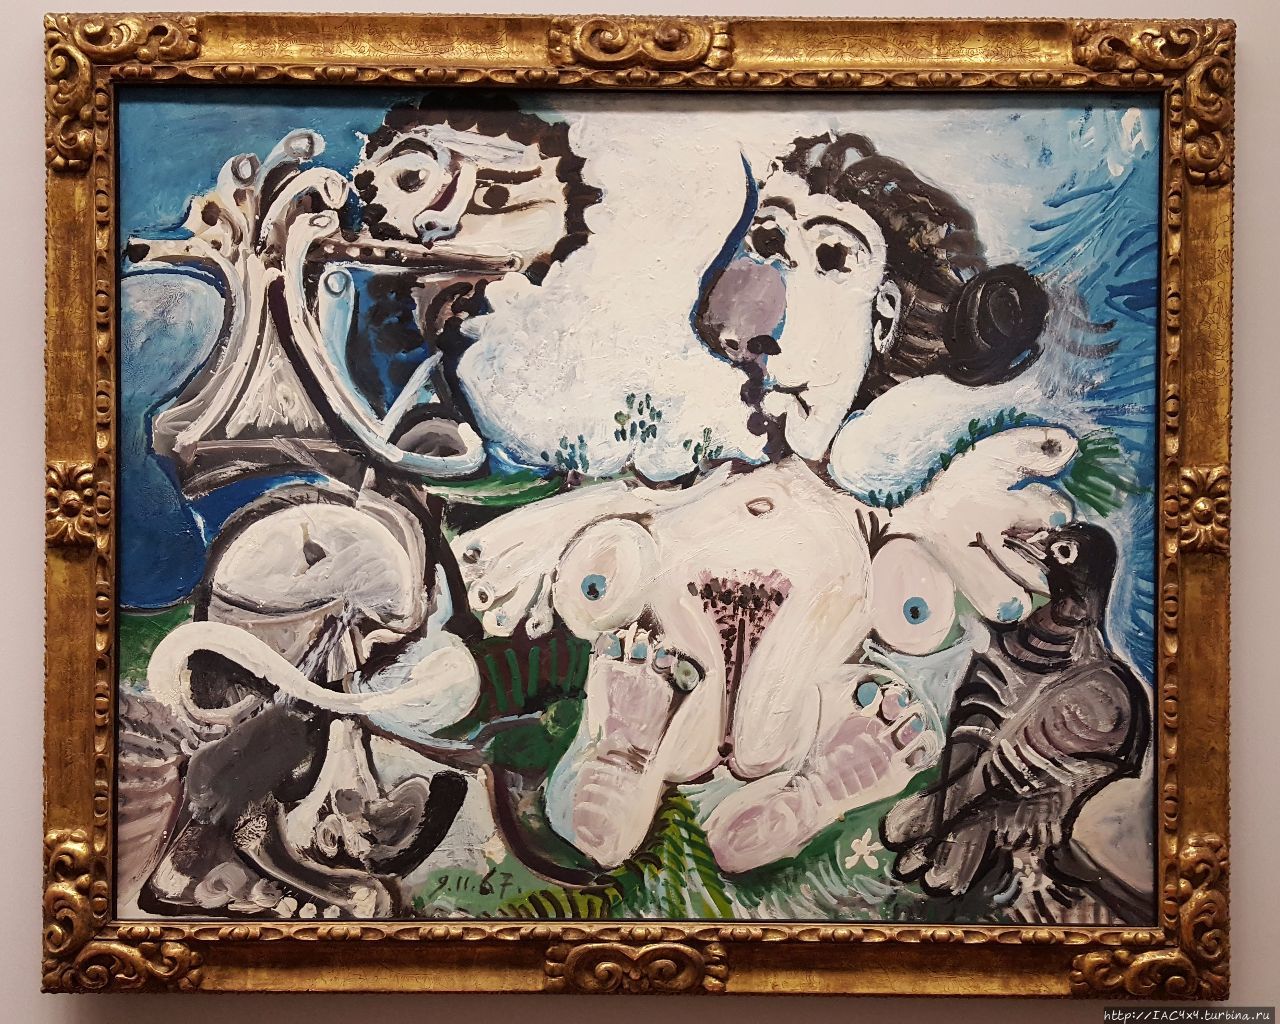 Пабло Пикассо, Обнаженная с птицей и флейтист (1967) Вена, Австрия